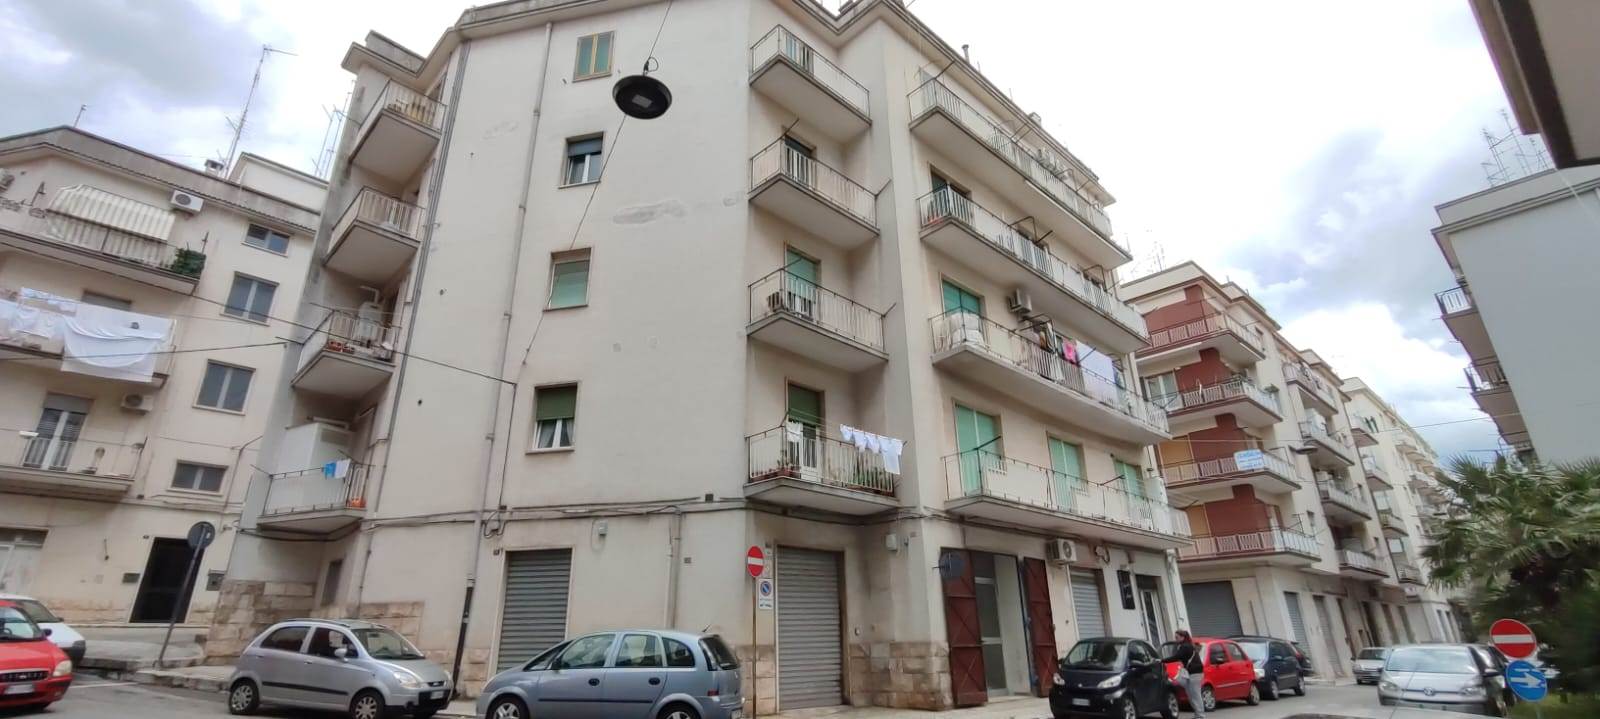 Appartamento in vendita a Martina Franca, 4 locali, prezzo € 110.000 | PortaleAgenzieImmobiliari.it